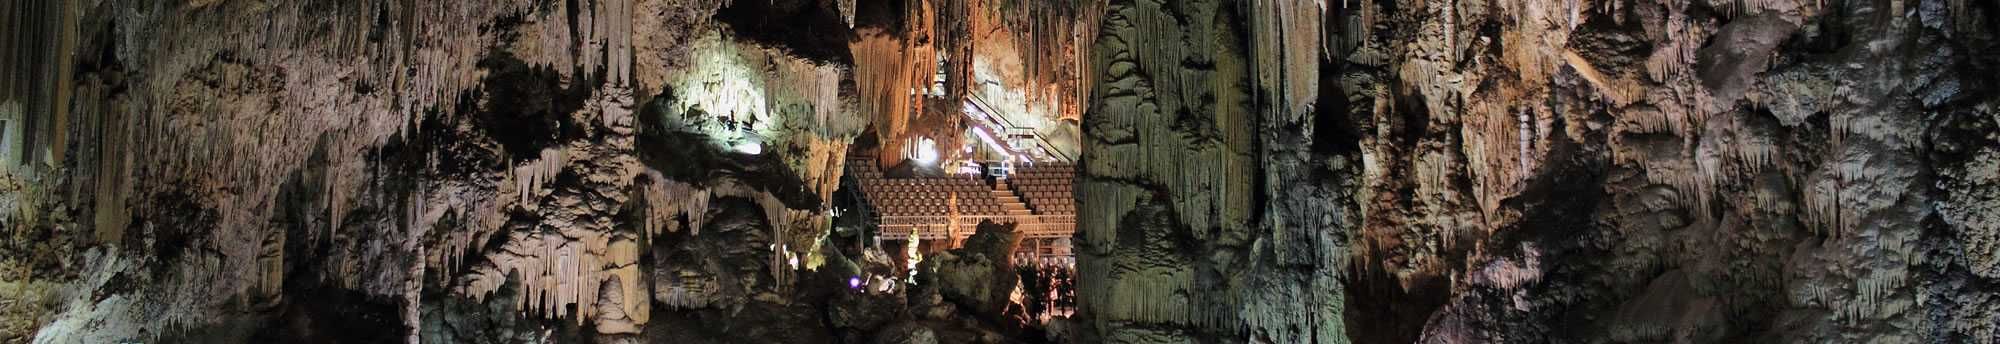 Entradas a la Cueva de Nerja